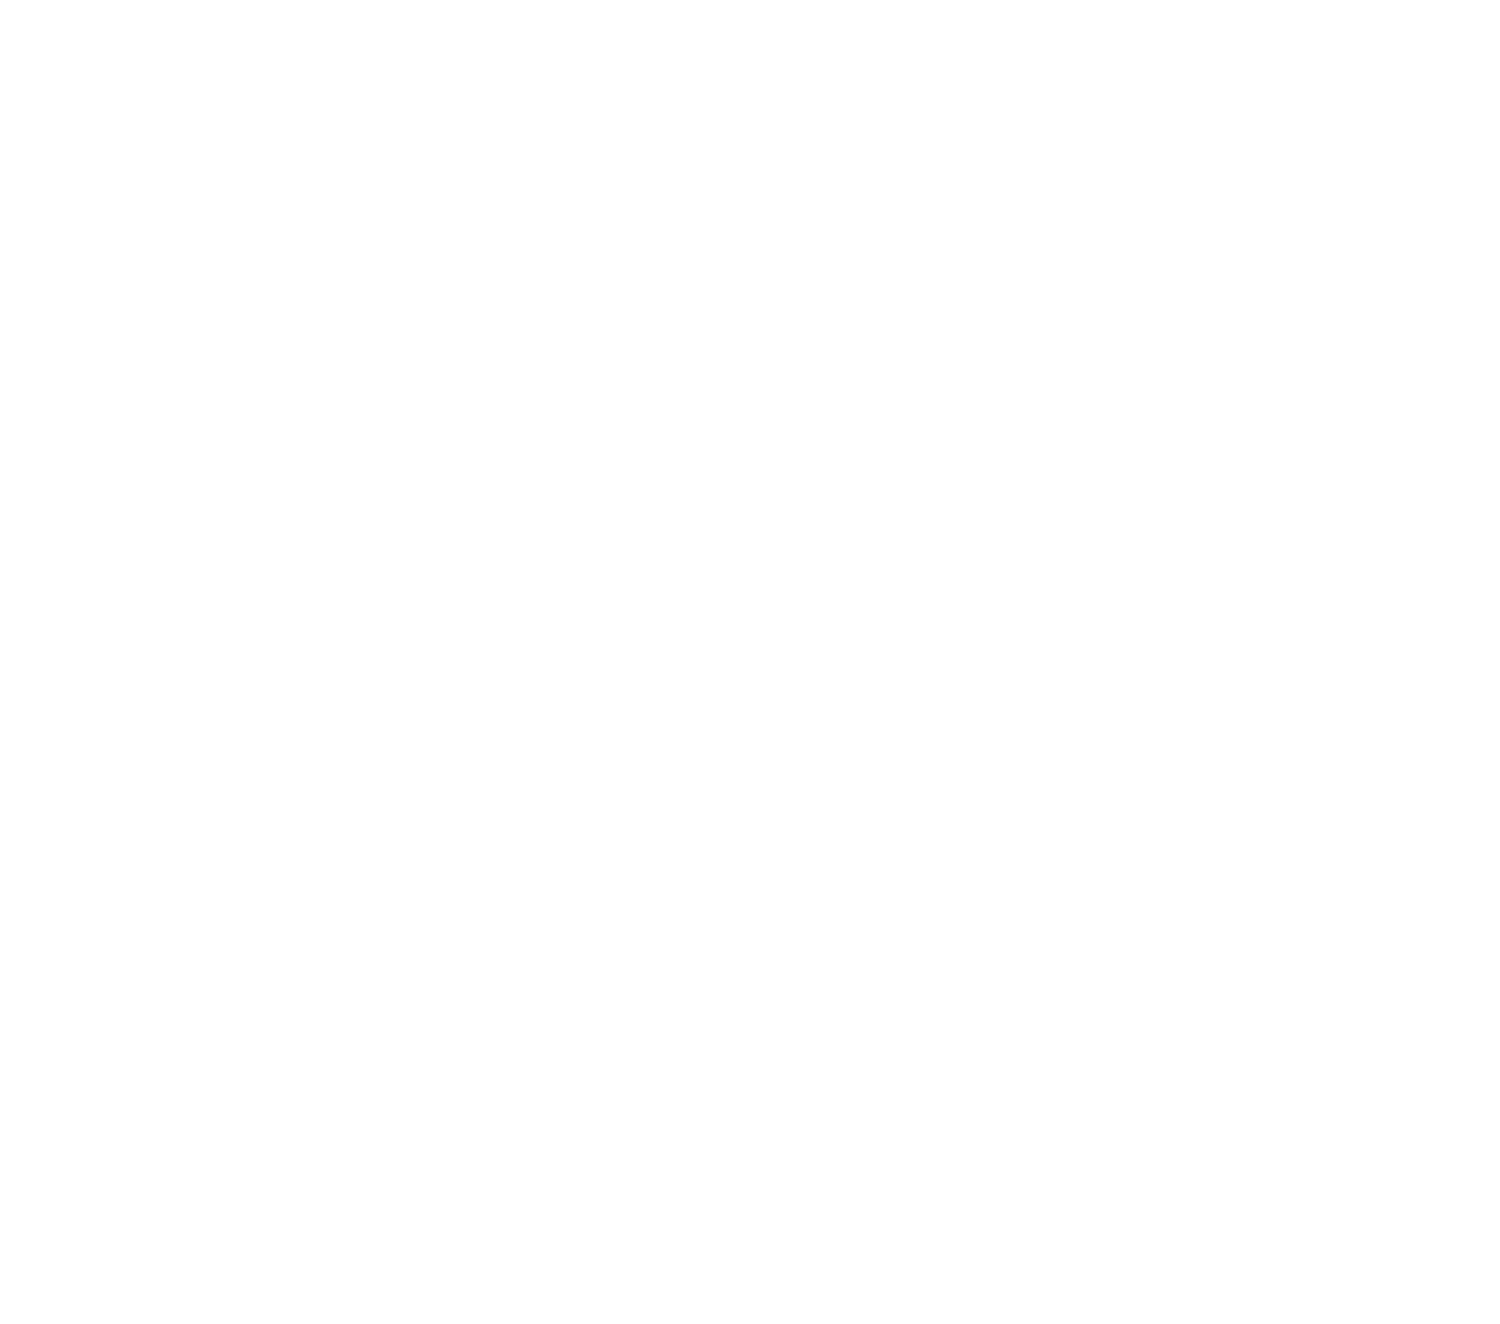 Thomas Scheck Weddings